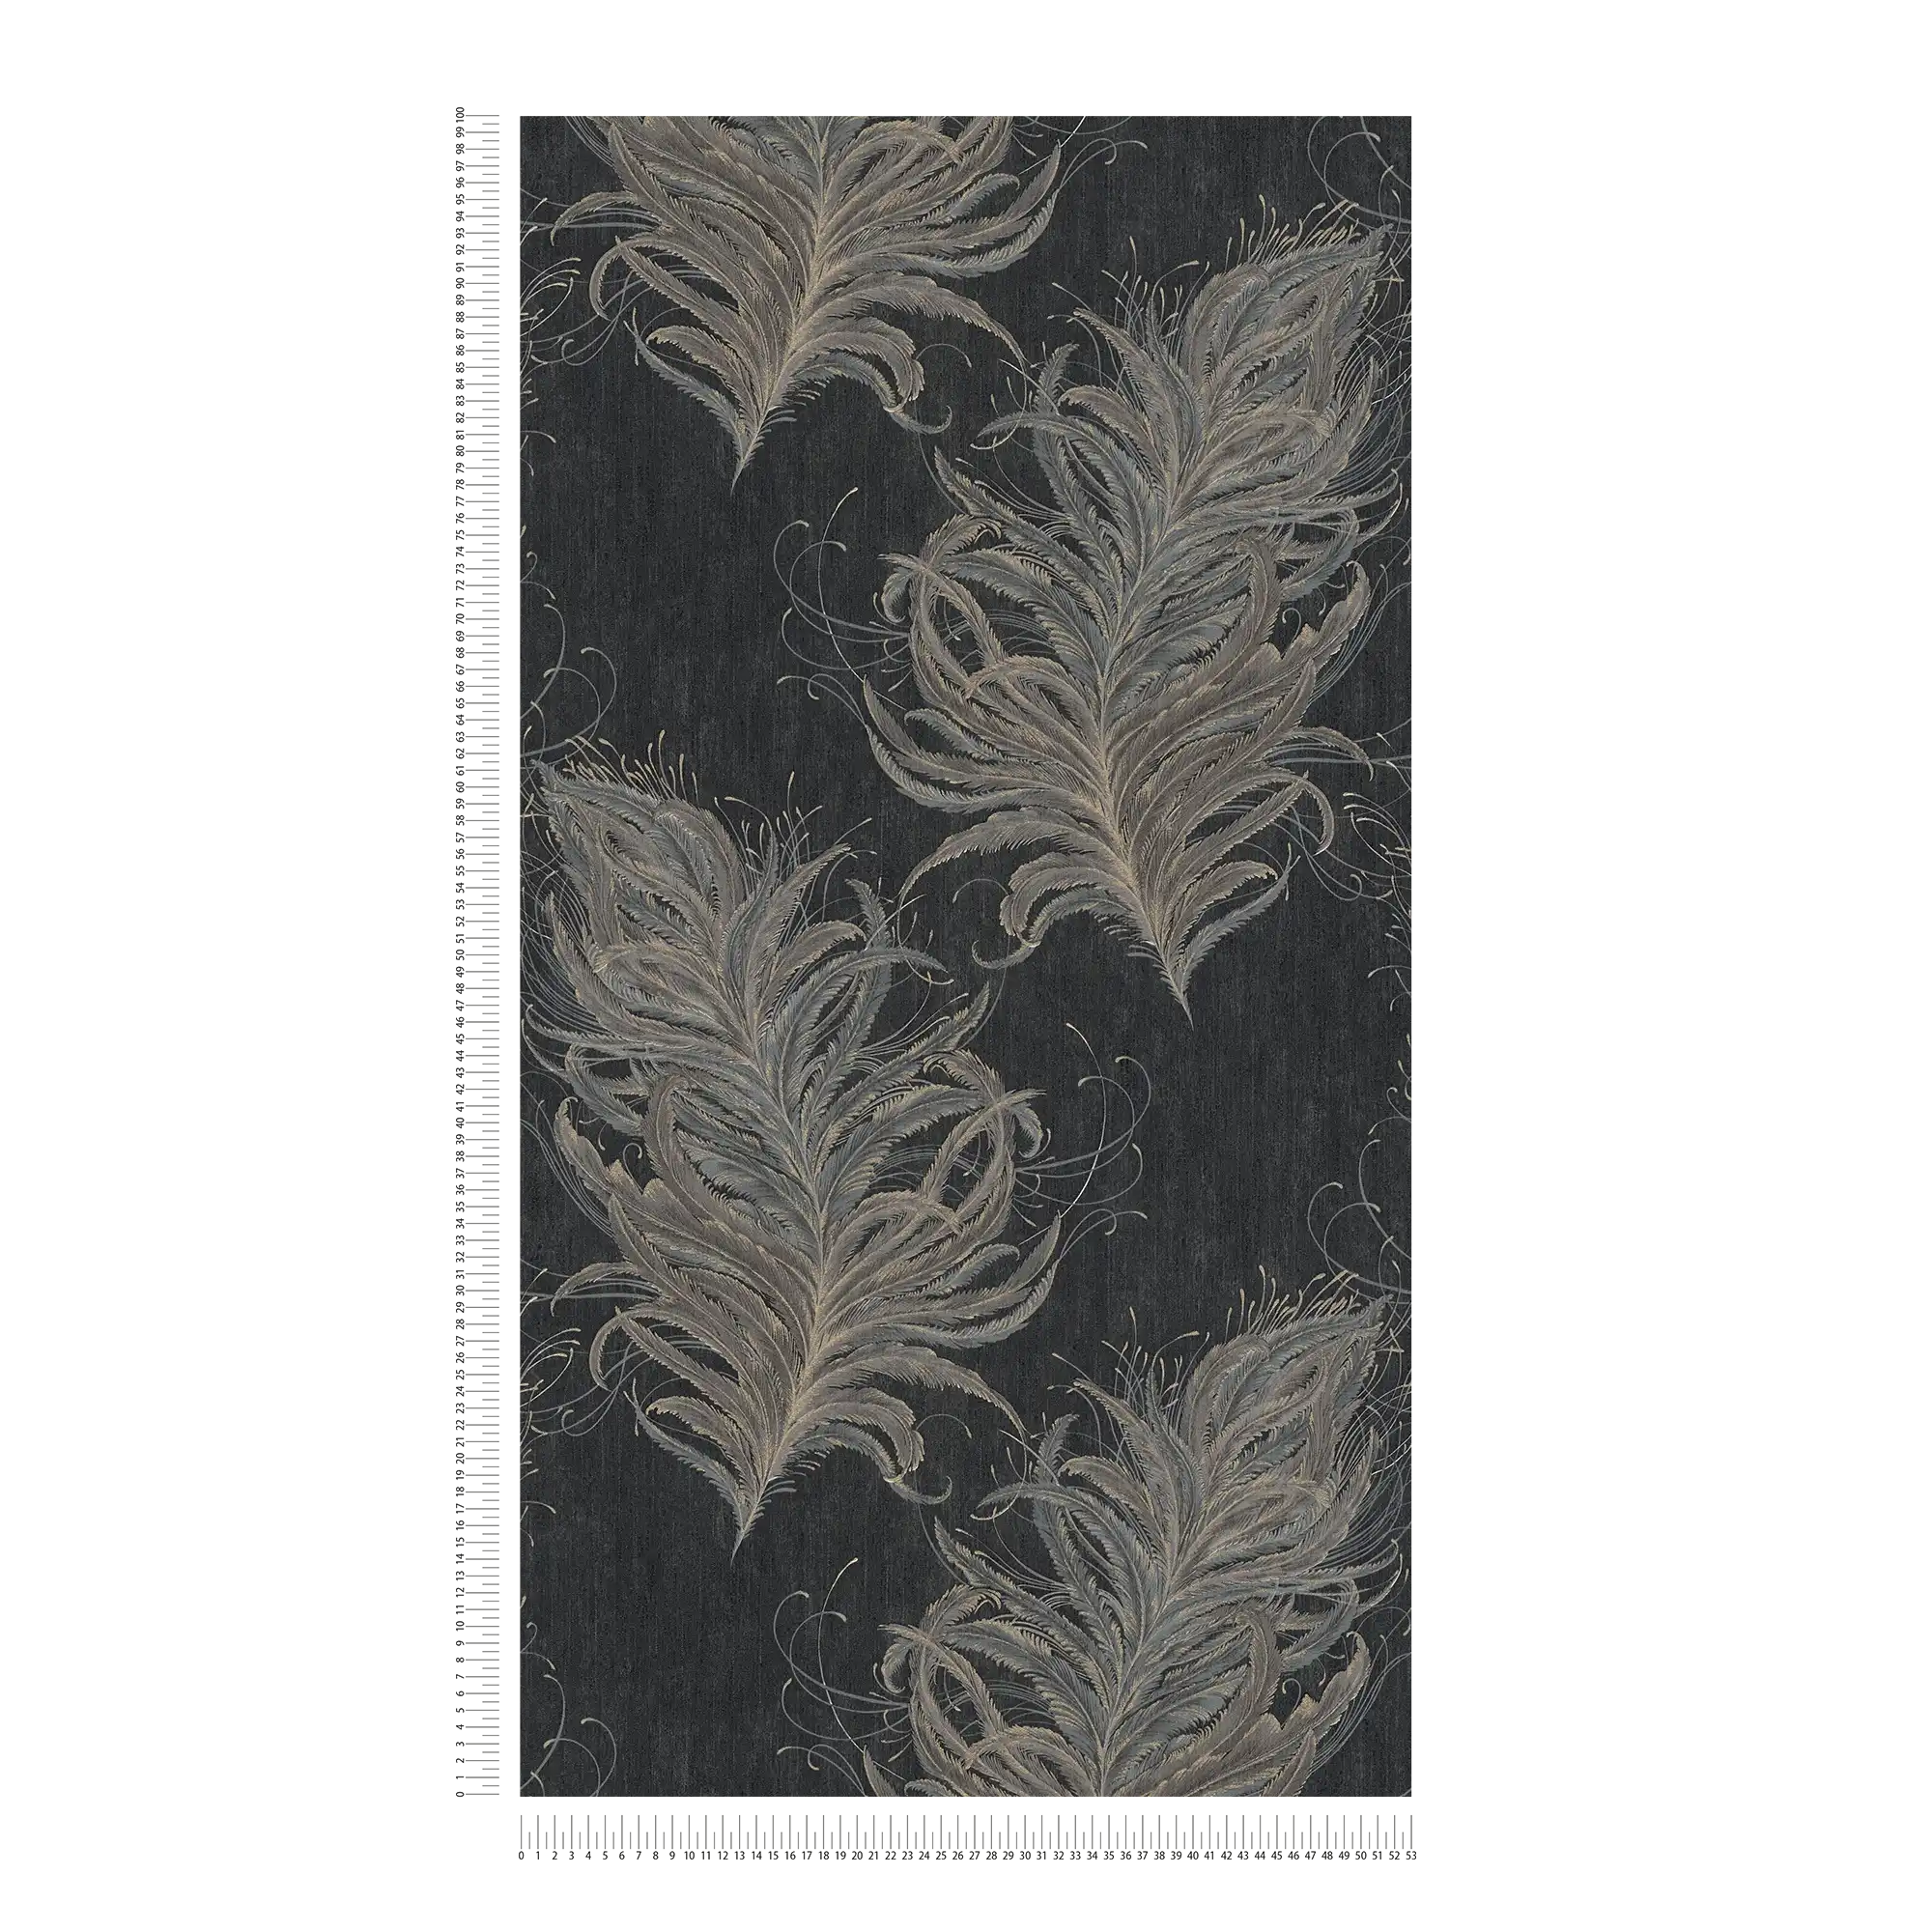             Papier peint intissé noir avec plumes aux couleurs métallisées
        